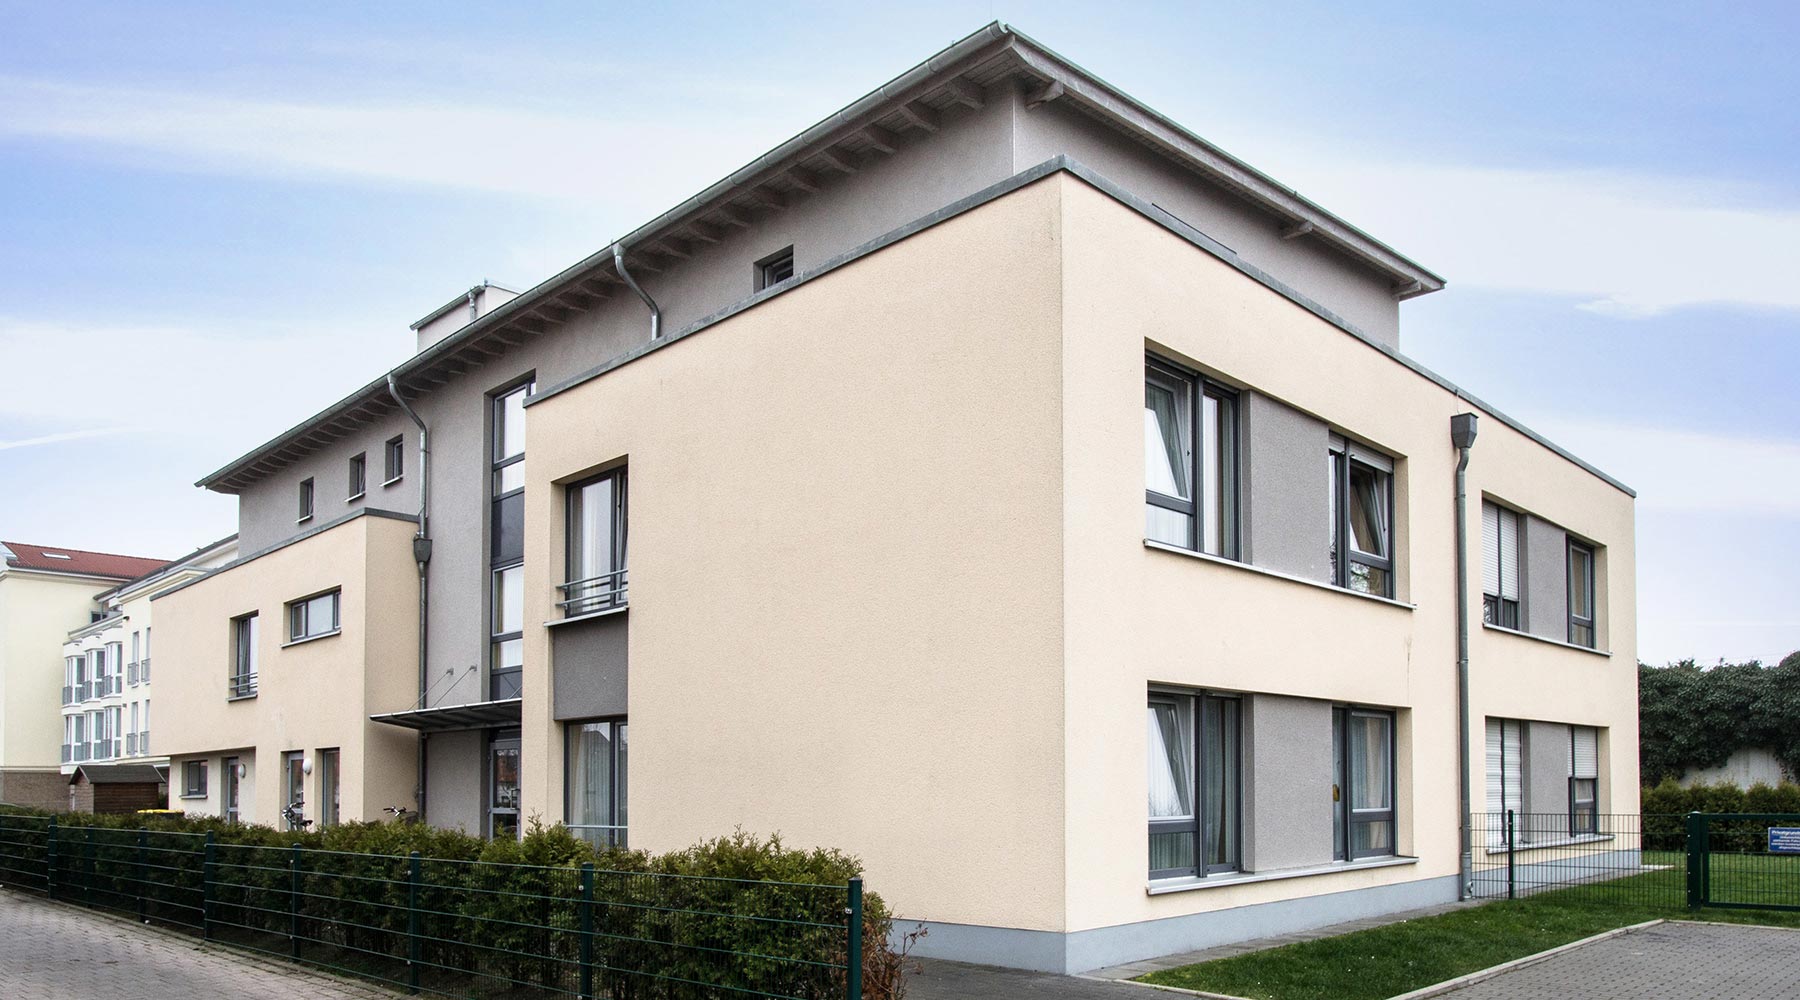 Haus Markus in Krefeld. Seitenansicht gelbe Fassade mit großen Fenstern und grauen Elementen. Staffelgeschoss in Grau.